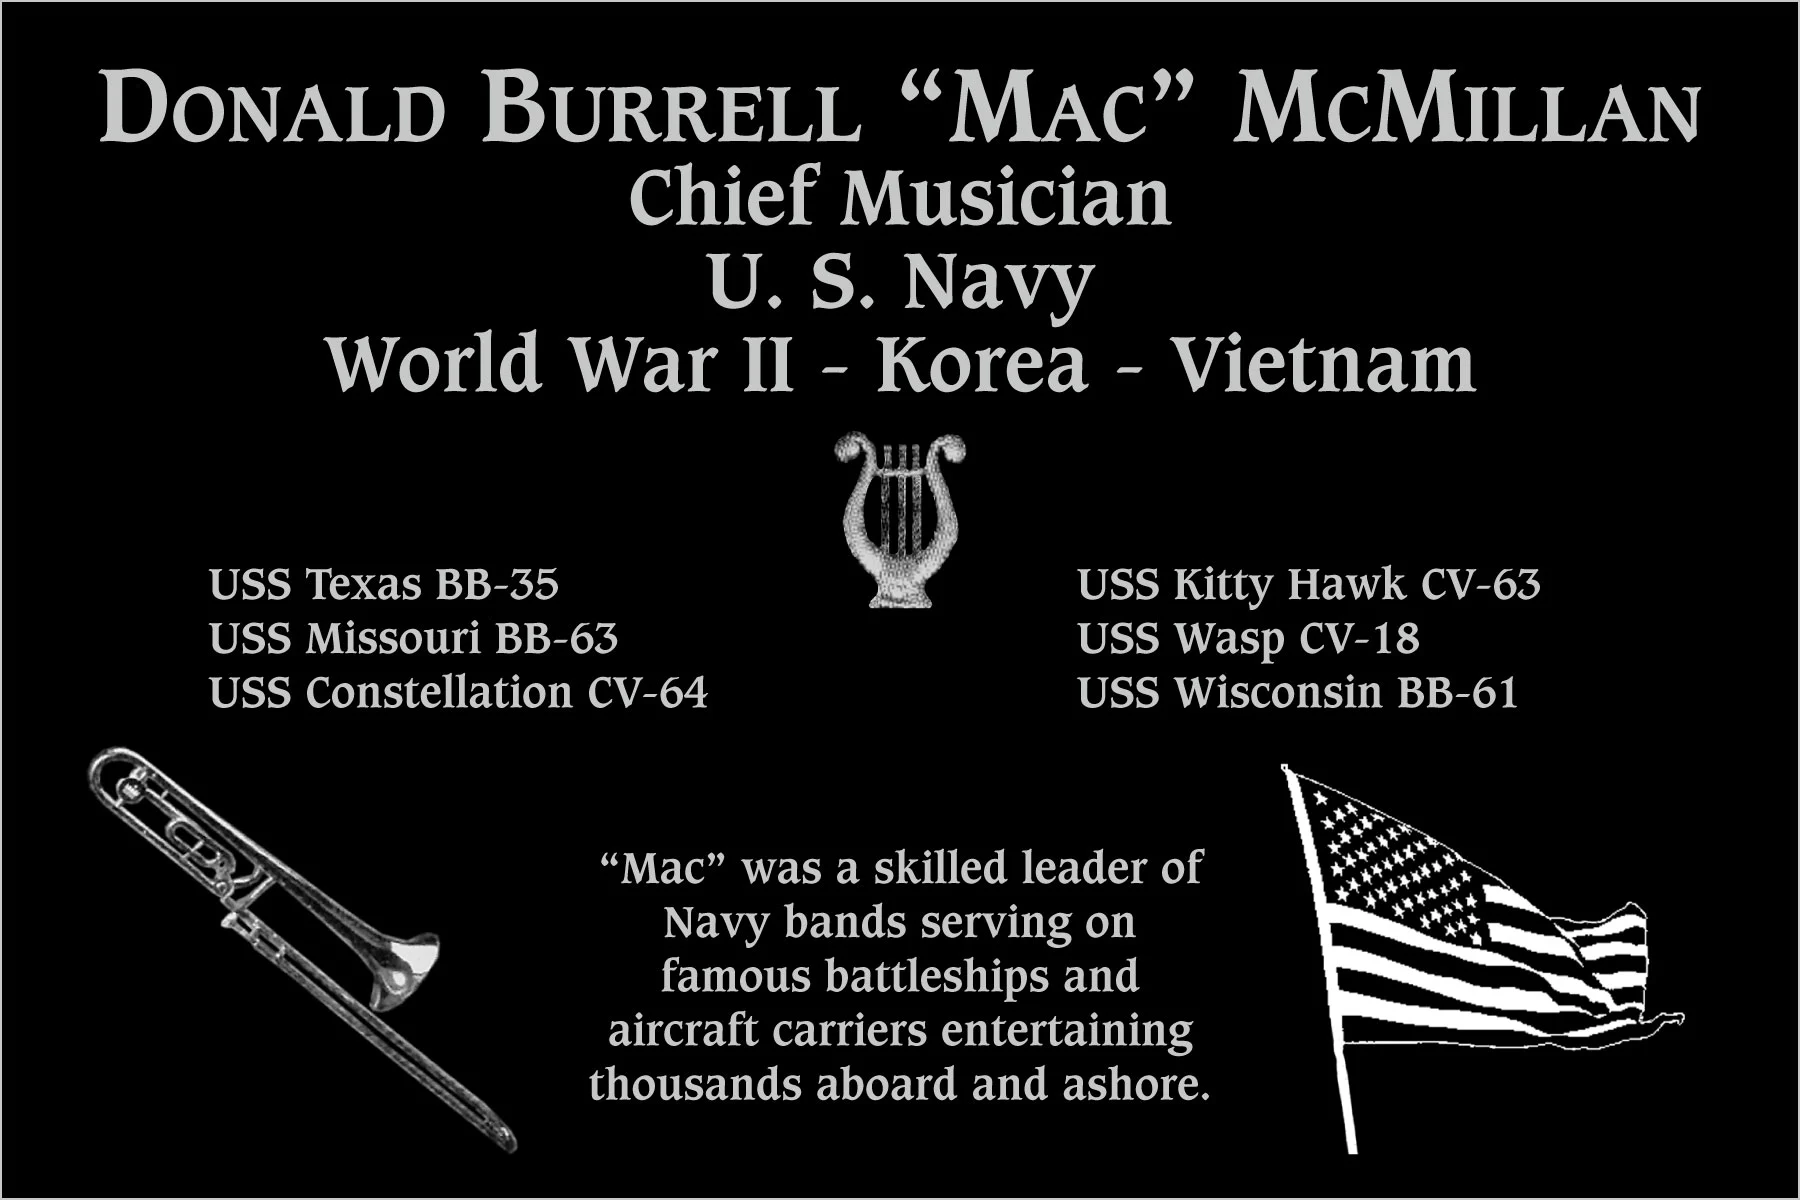 Donald Burrell “Mac” McMillan